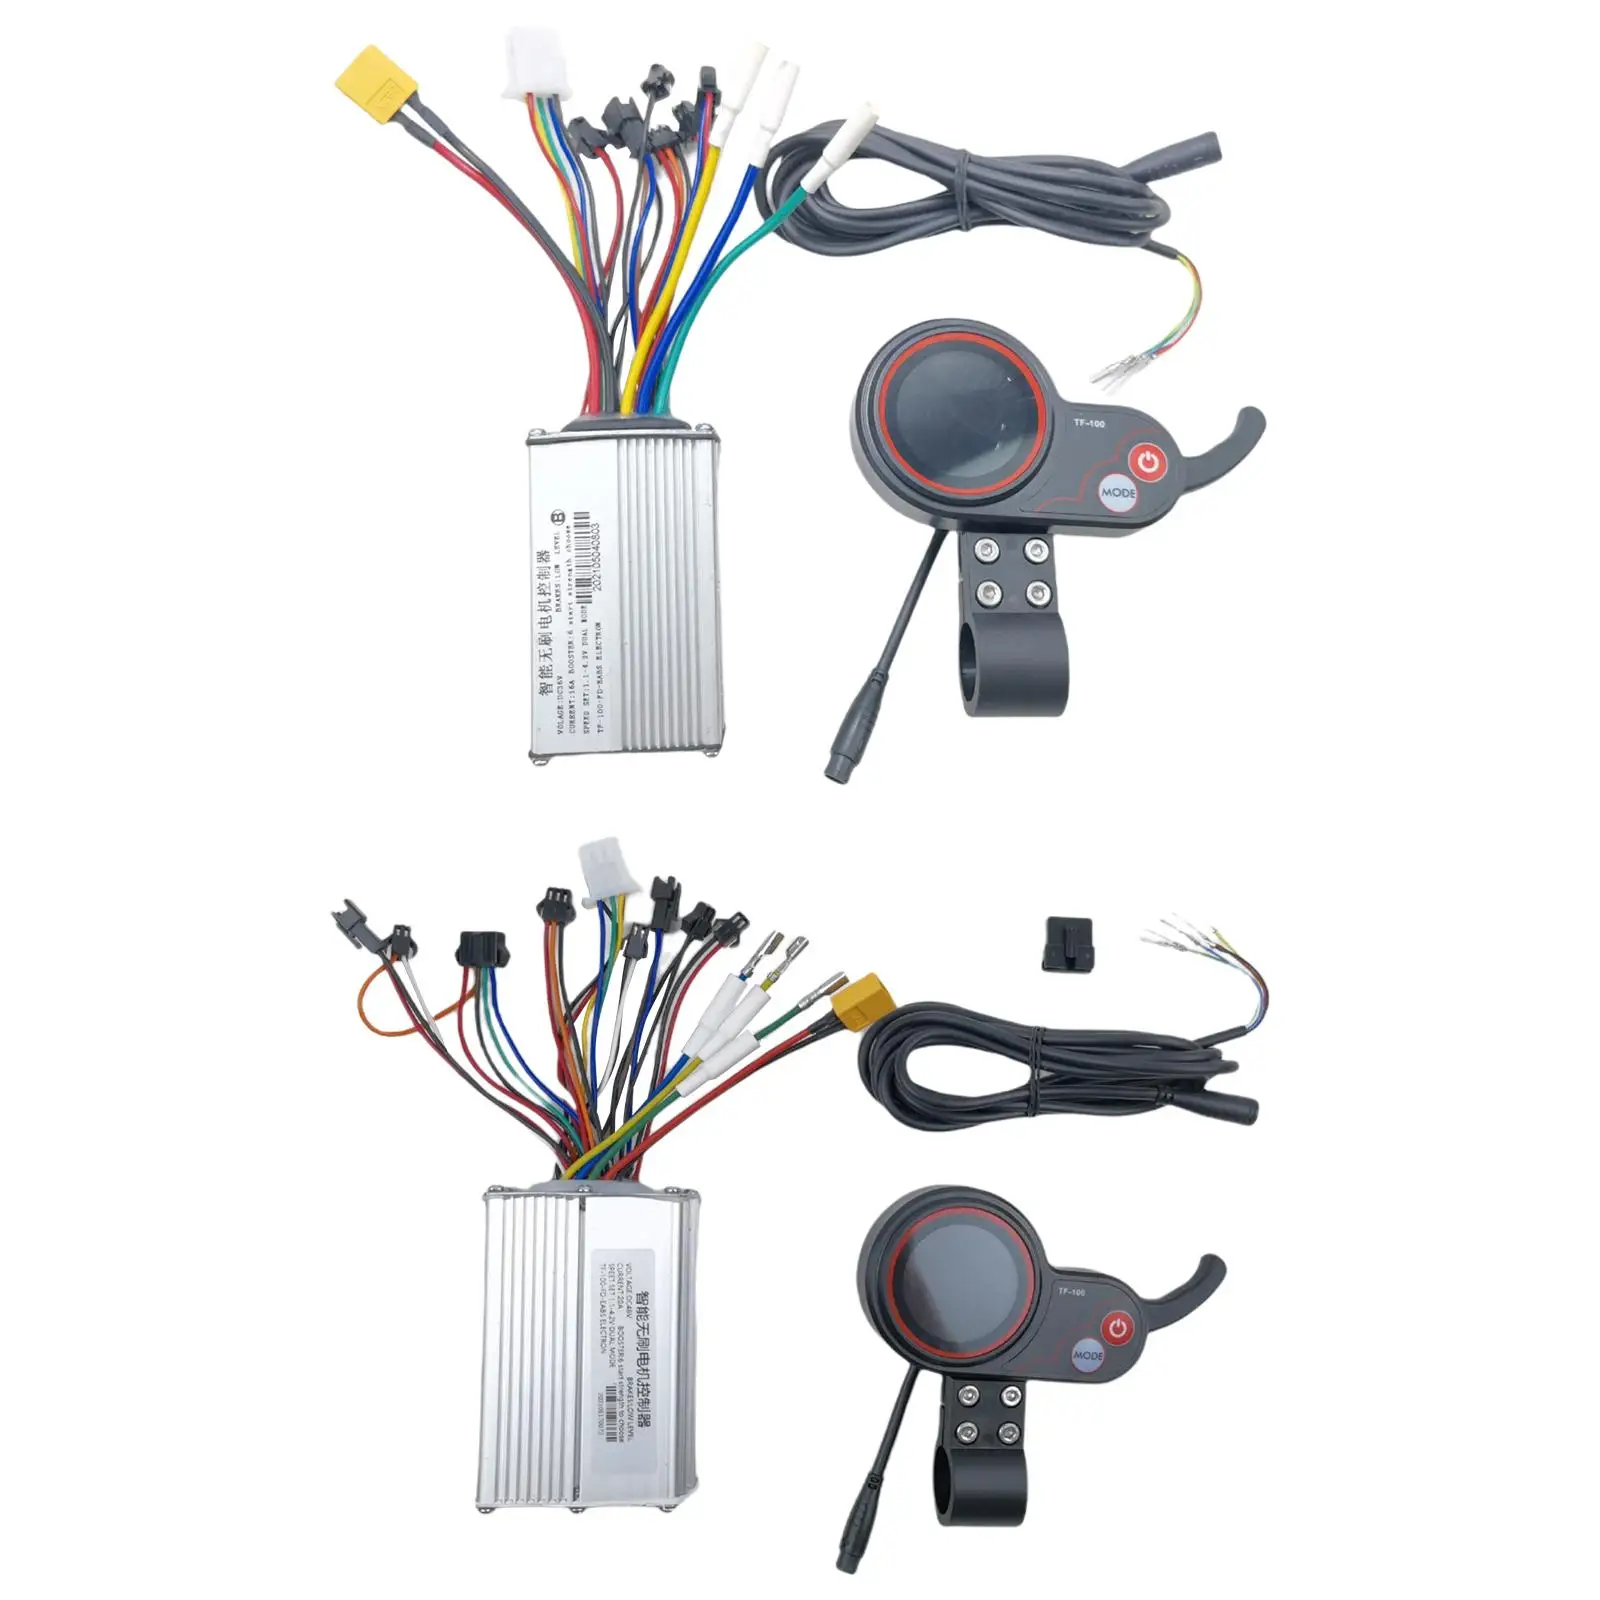 Motor Brushless Controller LCD Display 36V-48V for E-Bike Accessories Bike